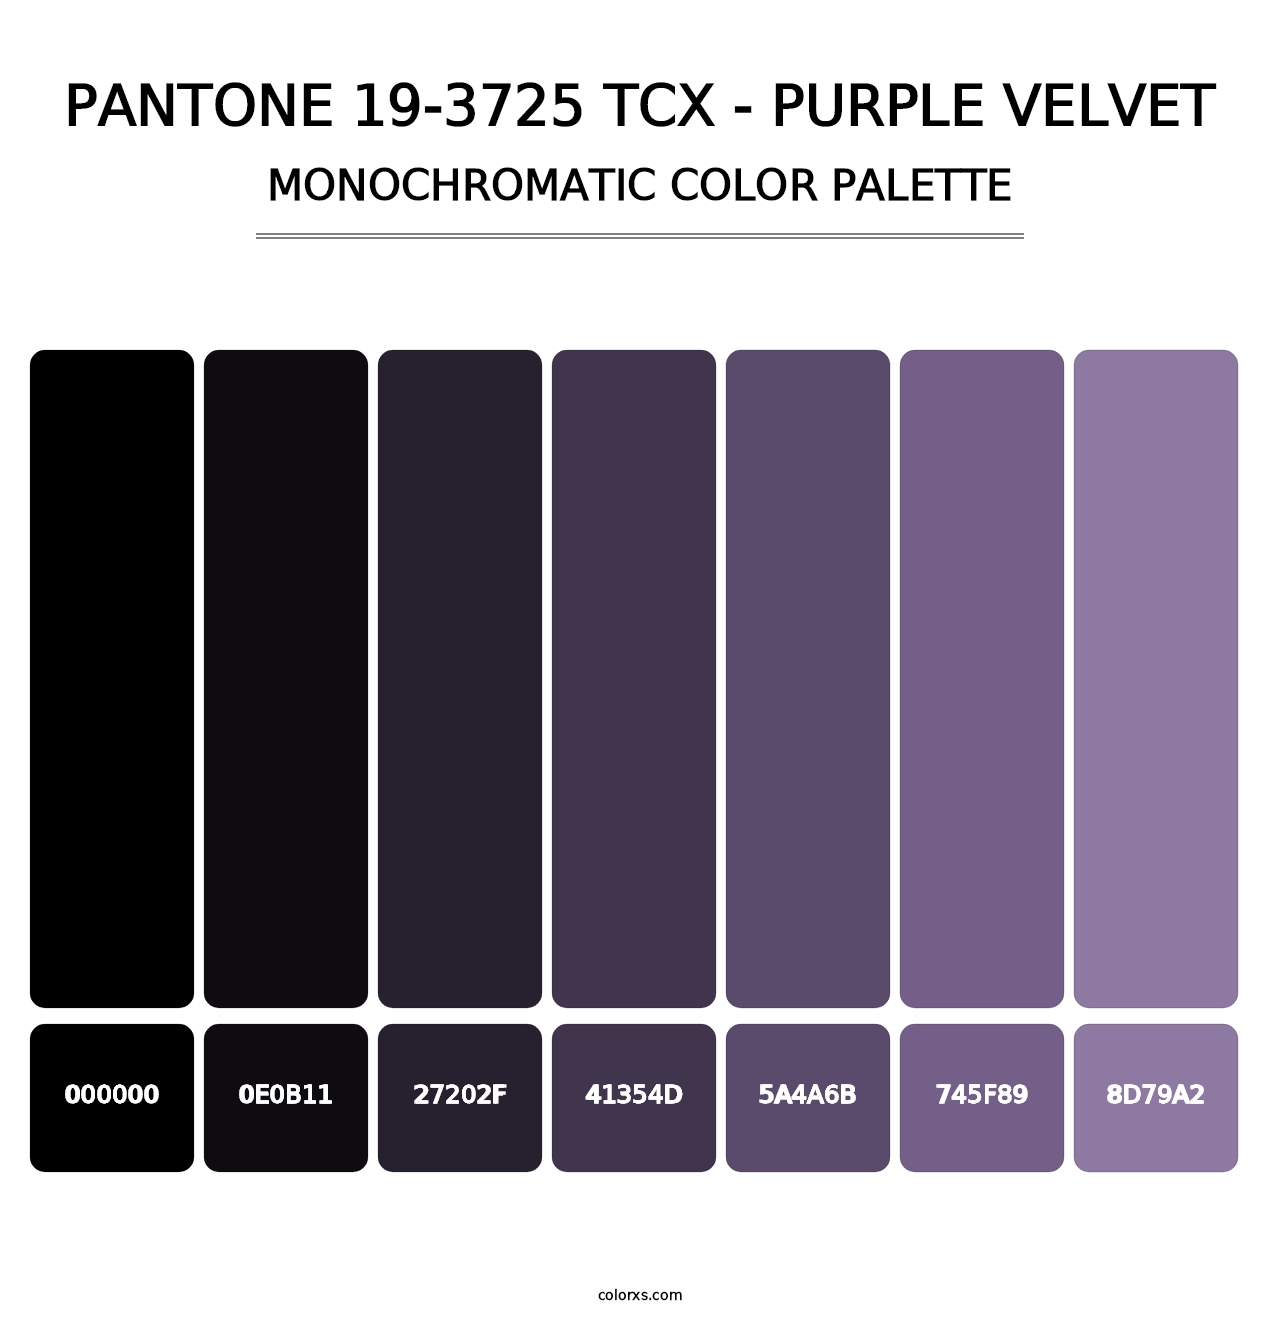 PANTONE 19-3725 TCX - Purple Velvet - Monochromatic Color Palette